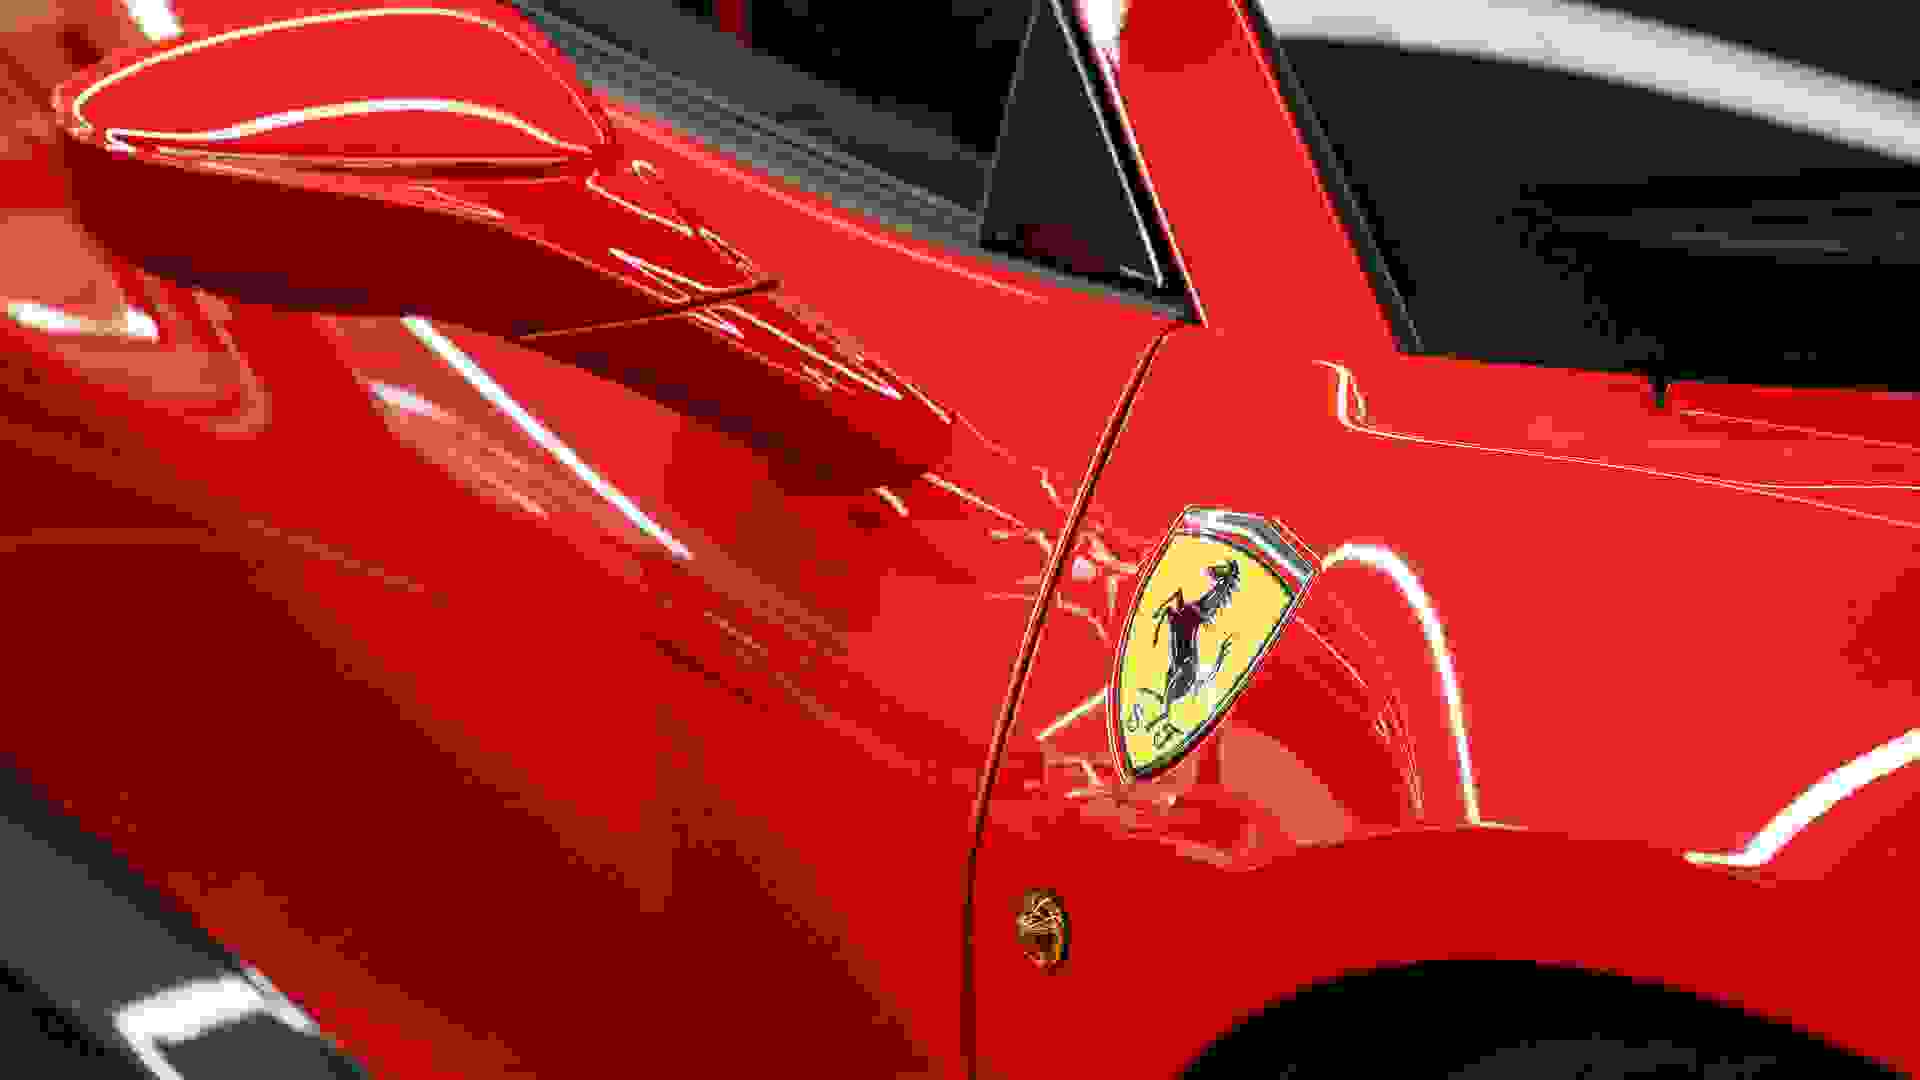 Ferrari 488 Photo 06a3d4e2-ffa3-4869-9556-477d87dd2f8d.jpg